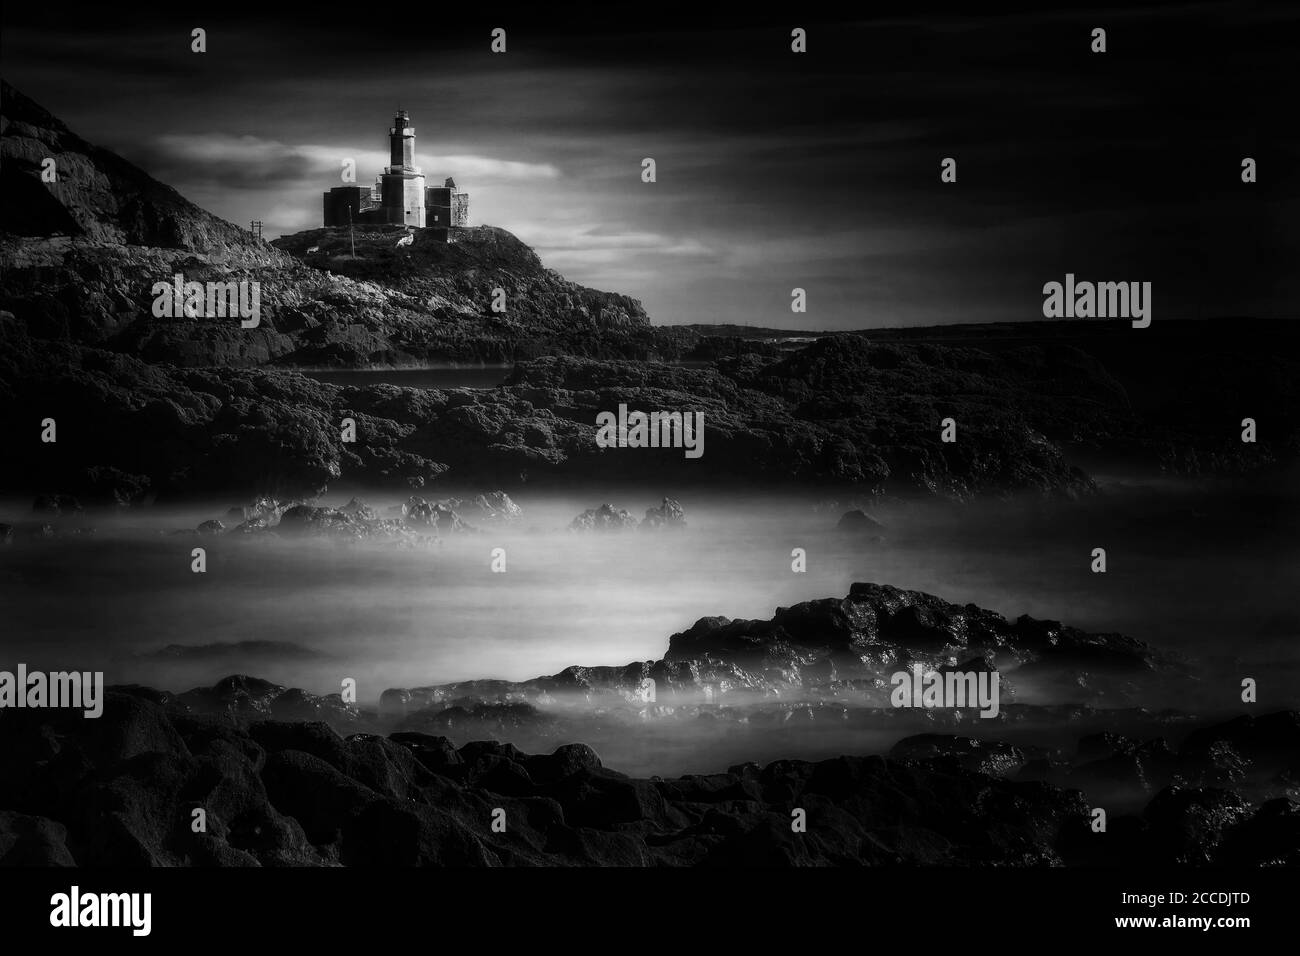 Die Mumbles mit seinem Leuchtturm Bracelet Bay ein beliebtes Walisisch Küstenlinie Wahrzeichen Attraktion für Touristen Besucher einfarbig schwarz und weiß Bild Stockfoto